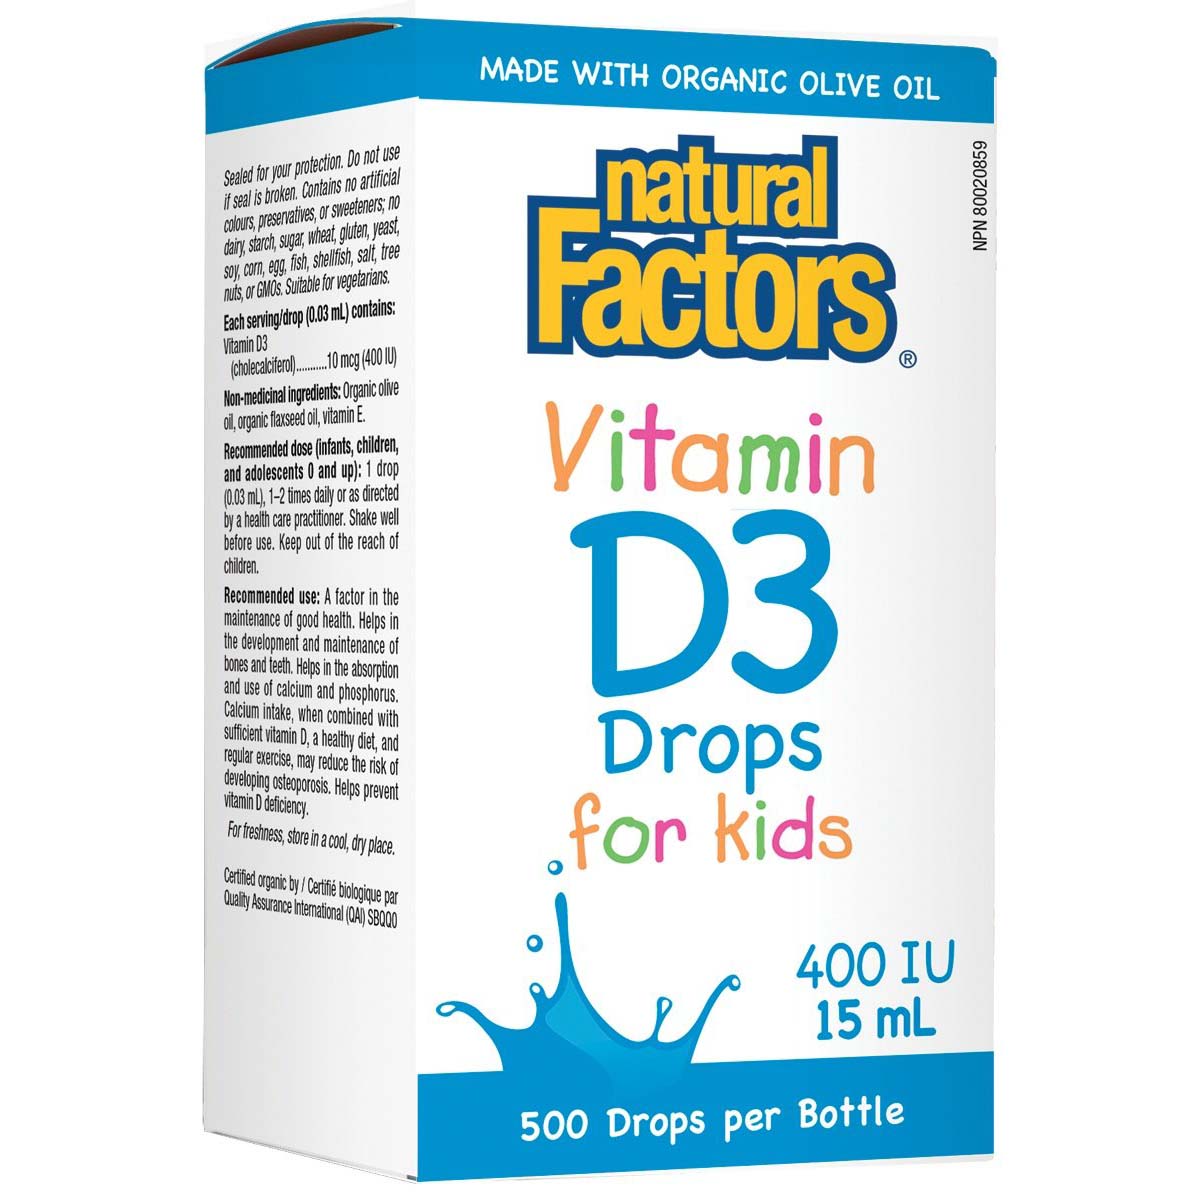 Natural Factors Vitamin D3 Drops for Kids 15 ML 400 IU